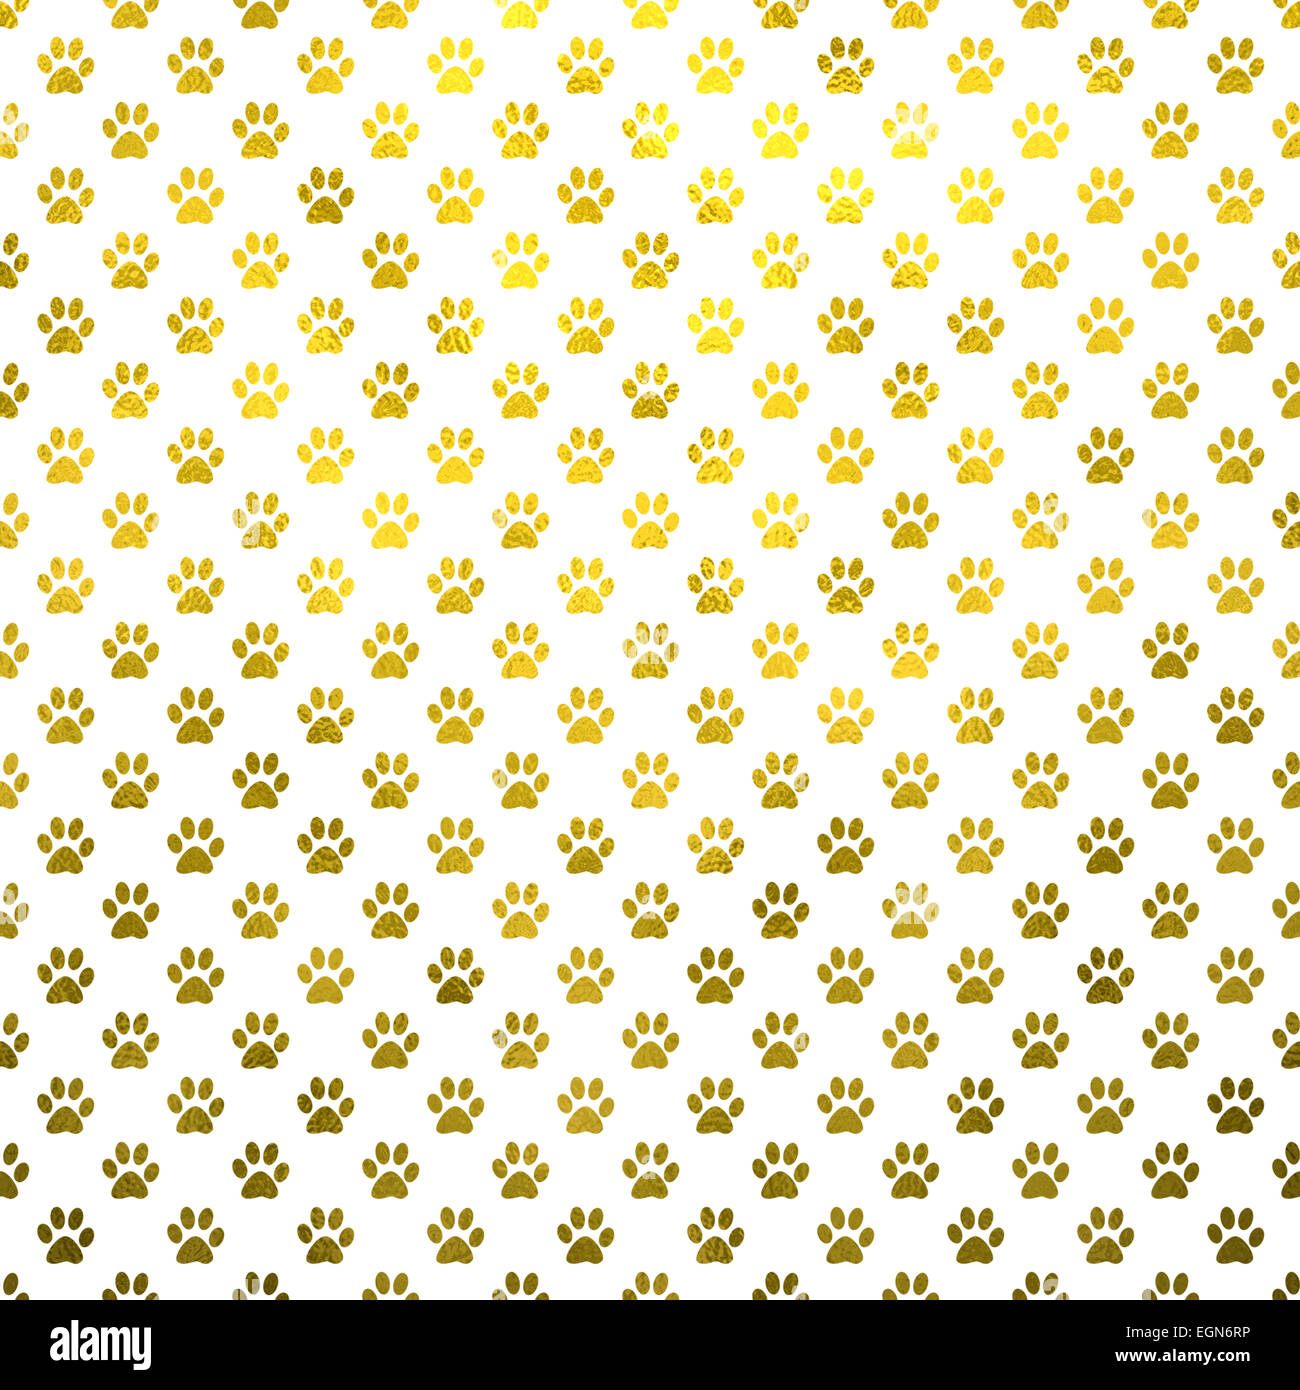 Hund Pfote Gold weiße Metallfolie Polka Dot Textur Hintergrundmuster Stockfoto